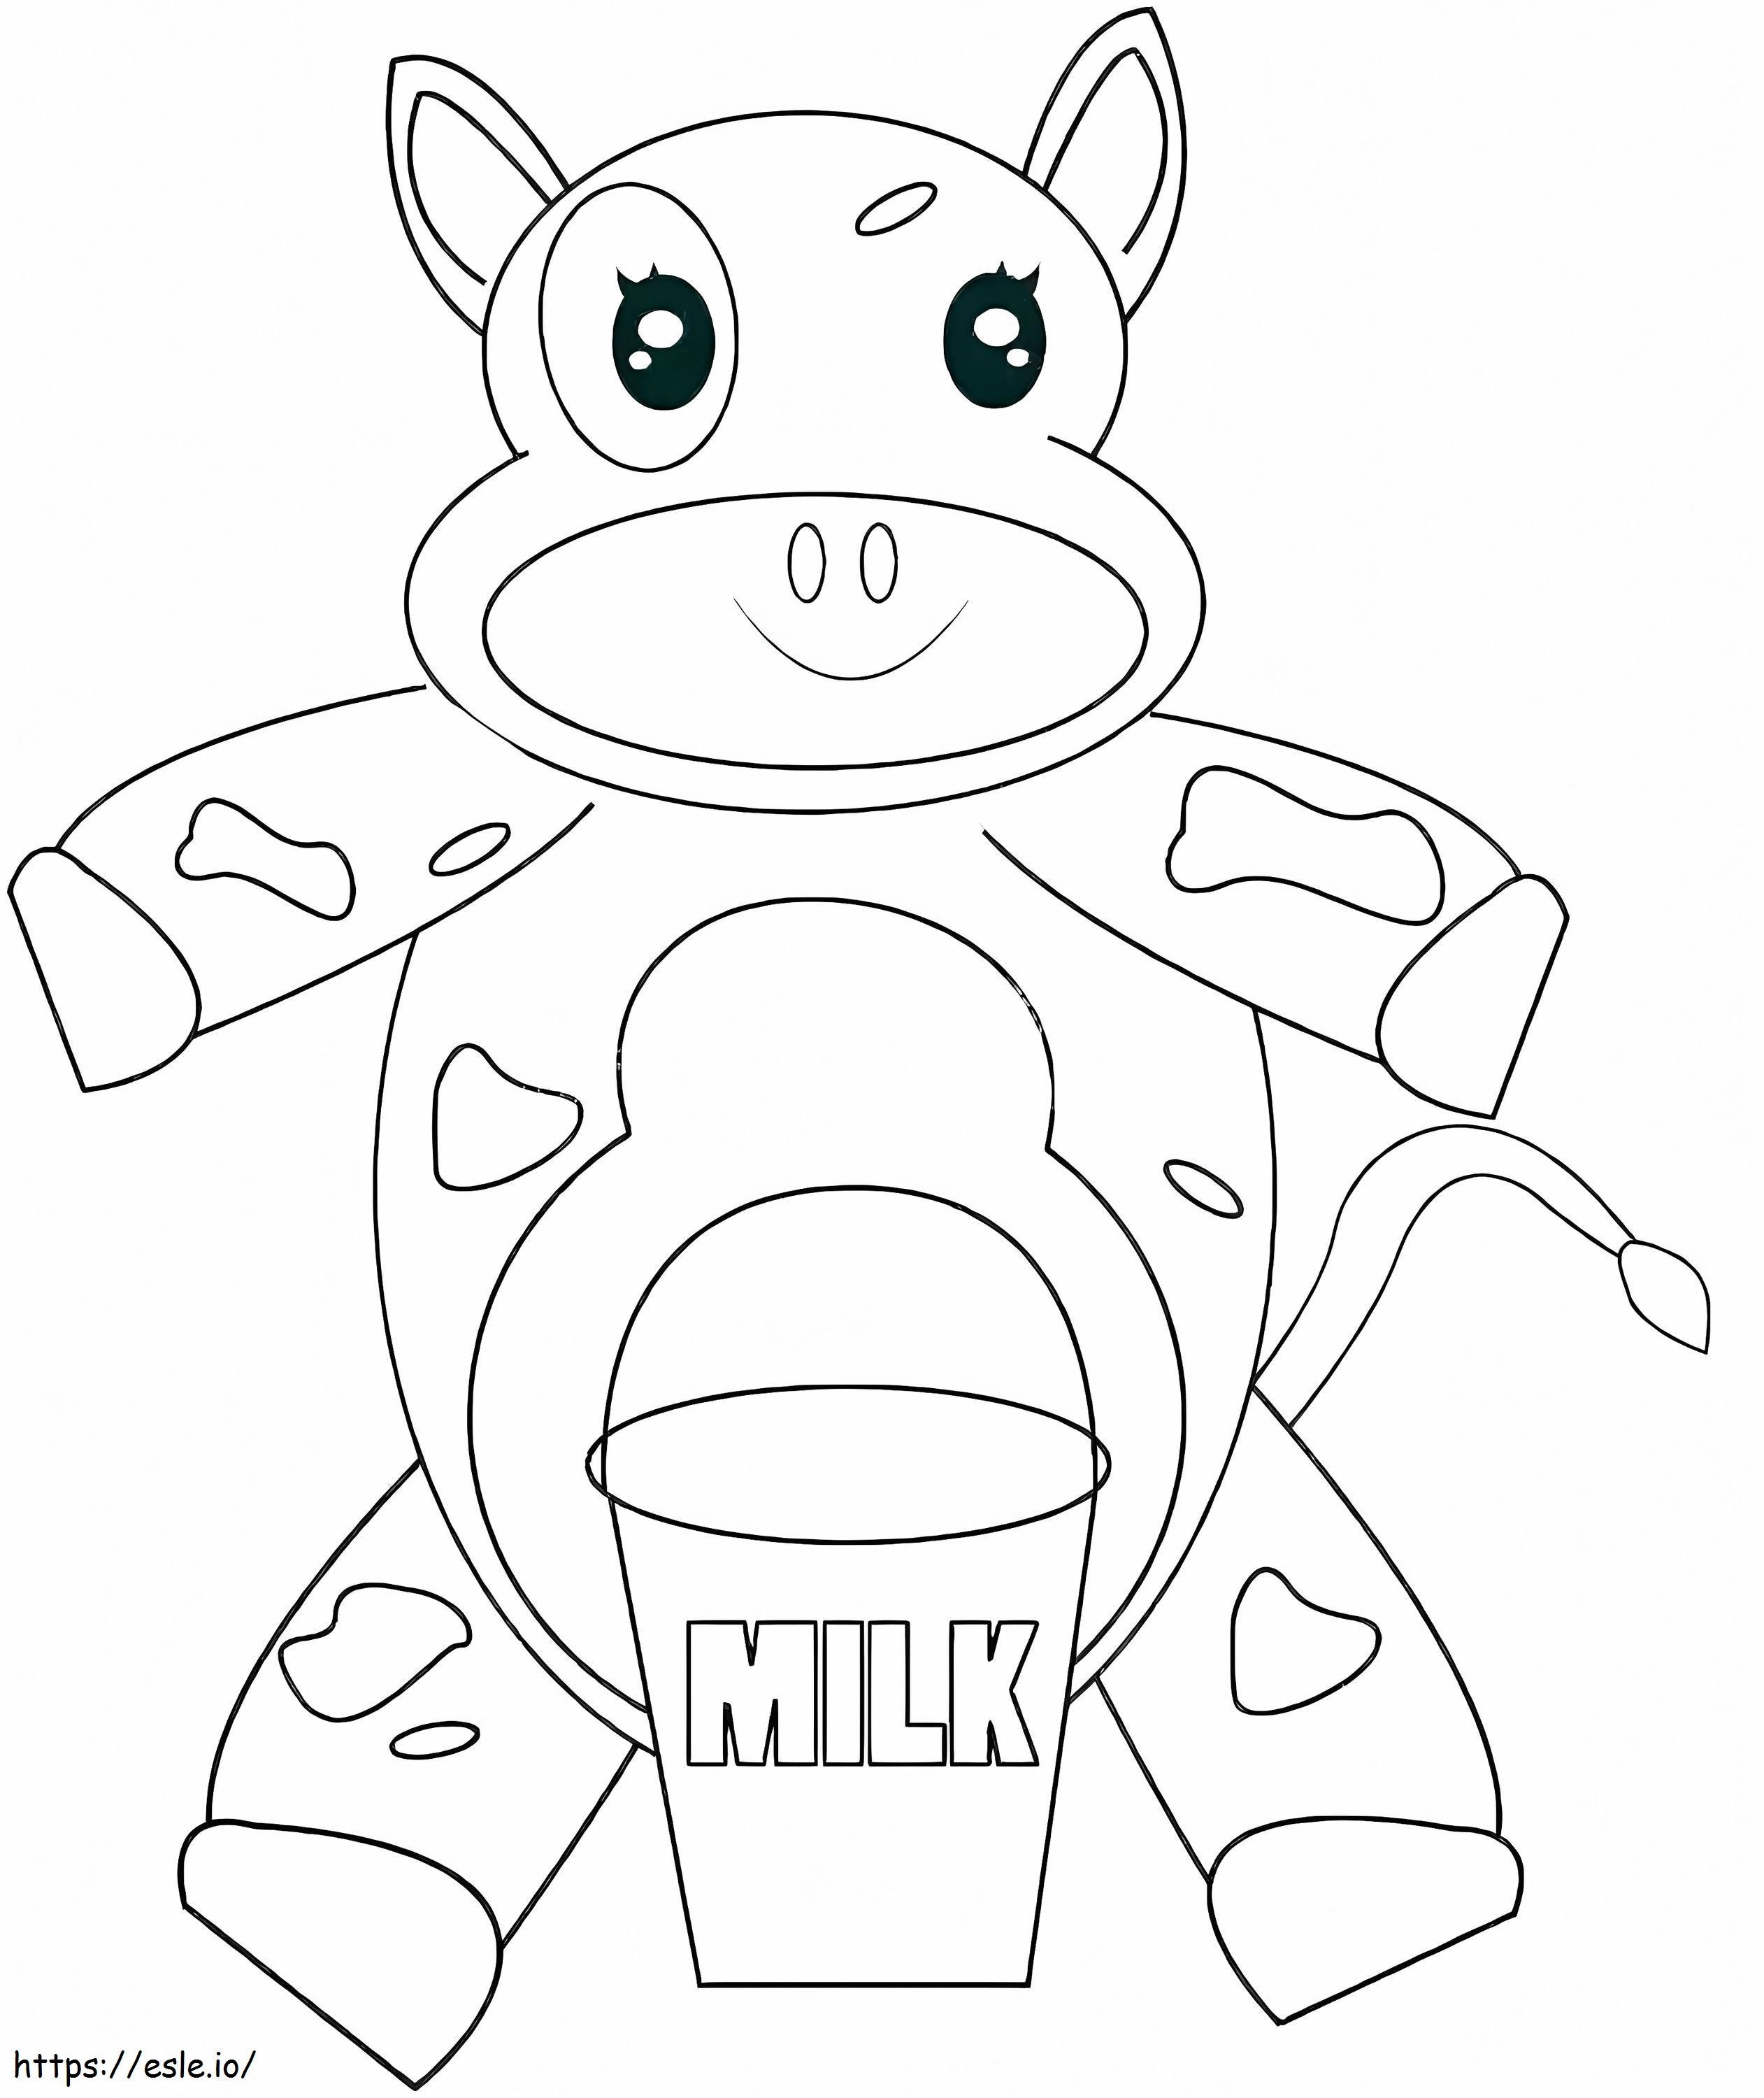 1570527081 Kuh Malvorlagen Kuh Buch Kuh Kuh Kuh Cartoon Malvorlagen für Kleinkinder ausmalbilder